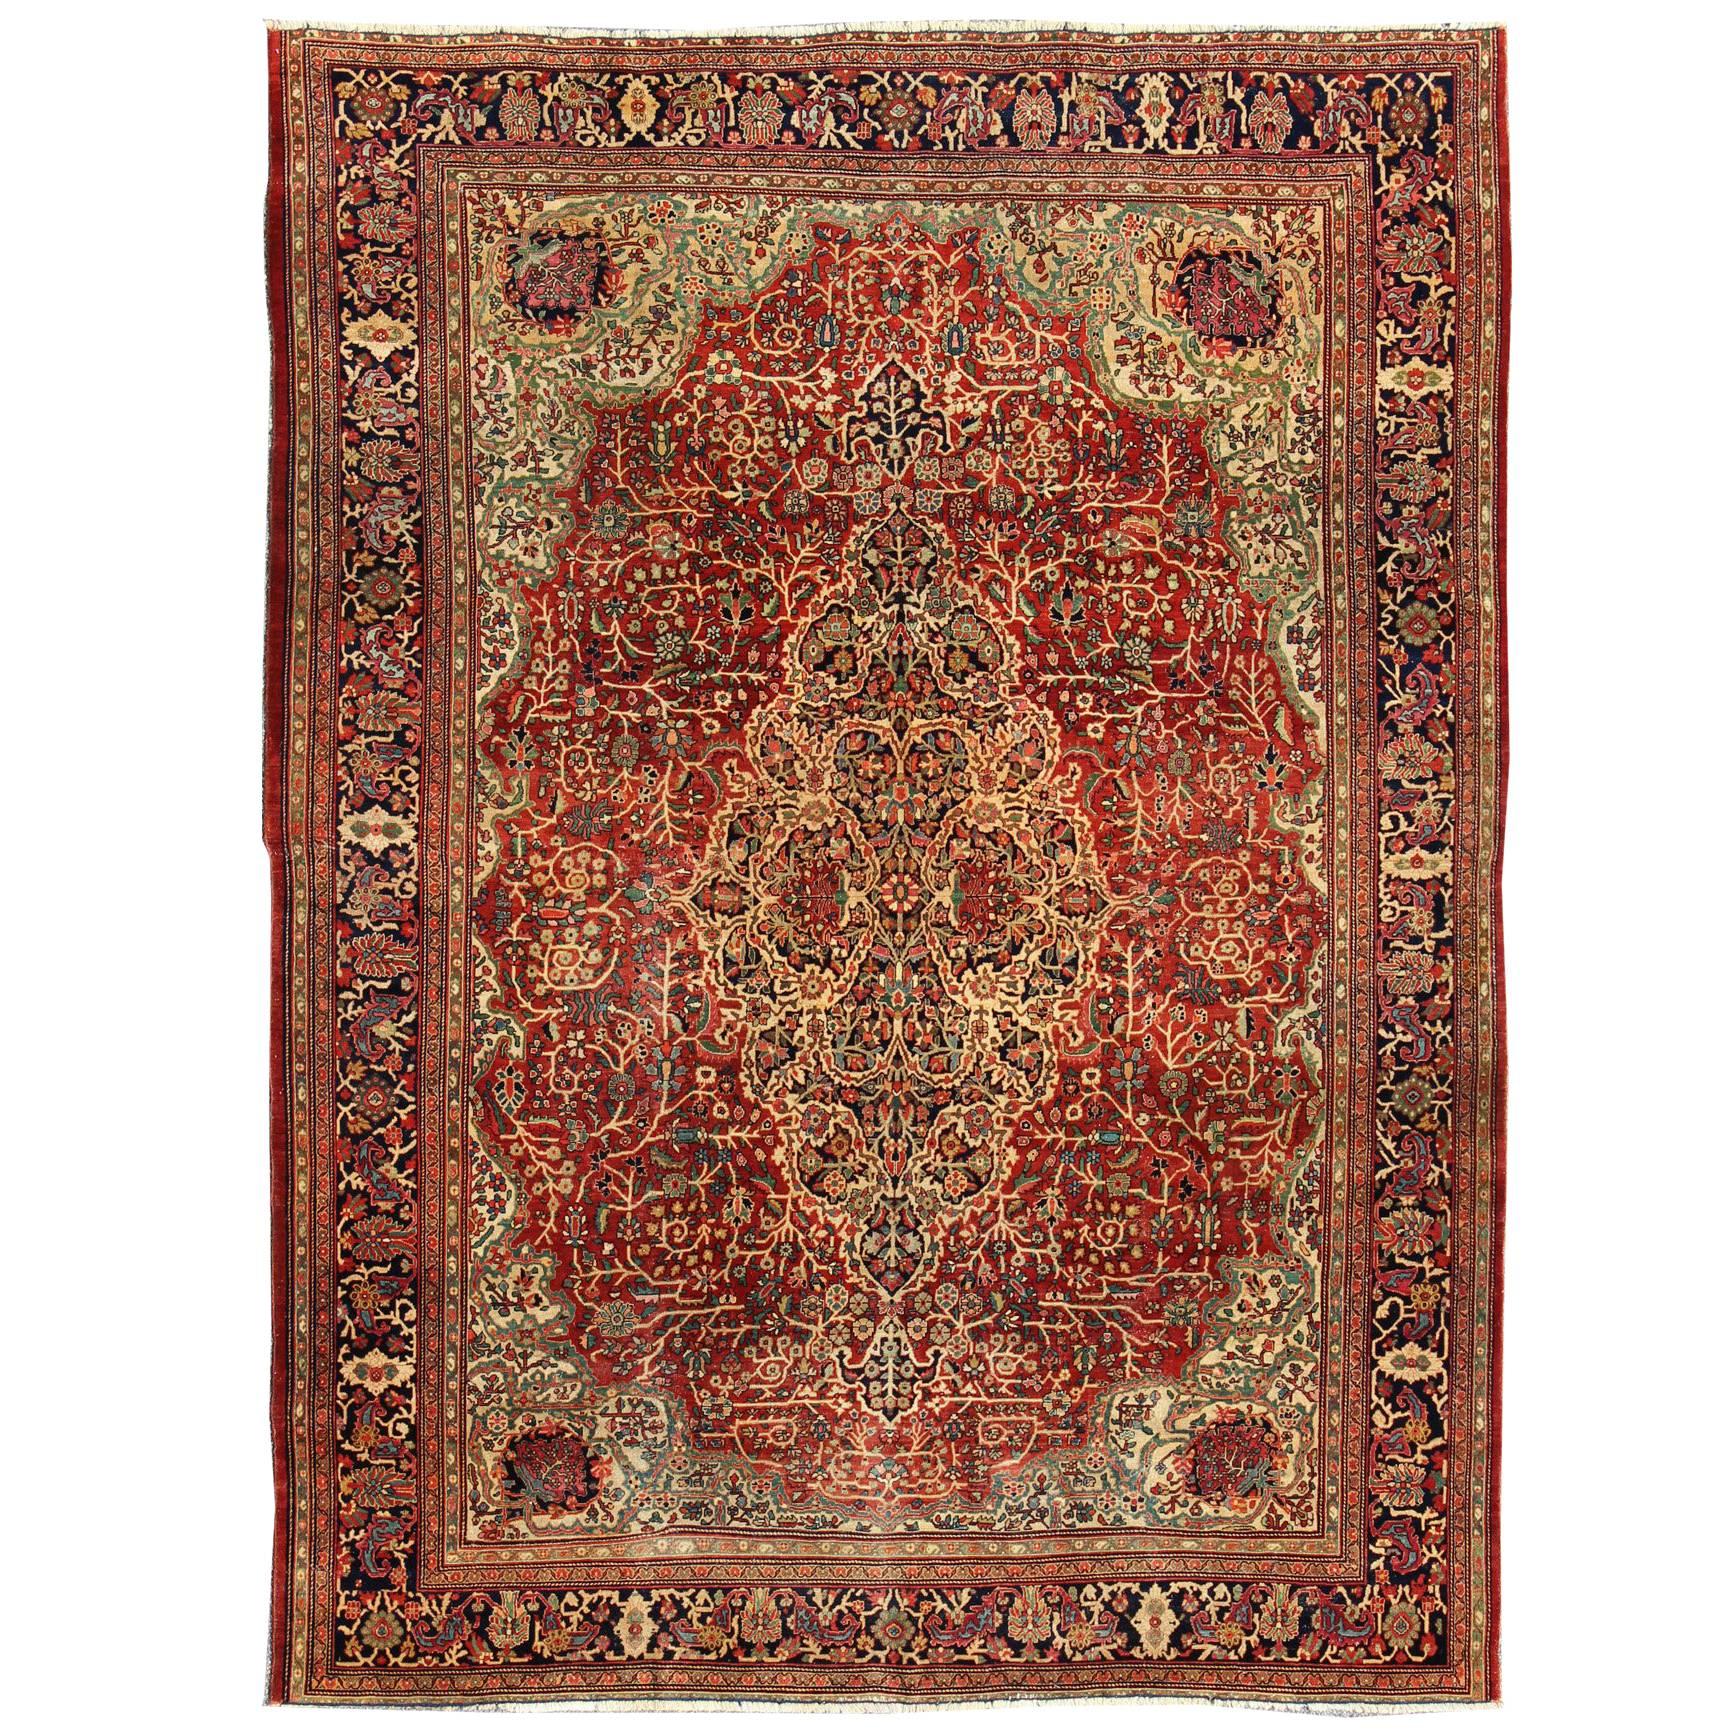  Antiker persischer Sarouk-Feraghan-Teppich des 19. Jahrhunderts mit kompliziertem Classic-Design